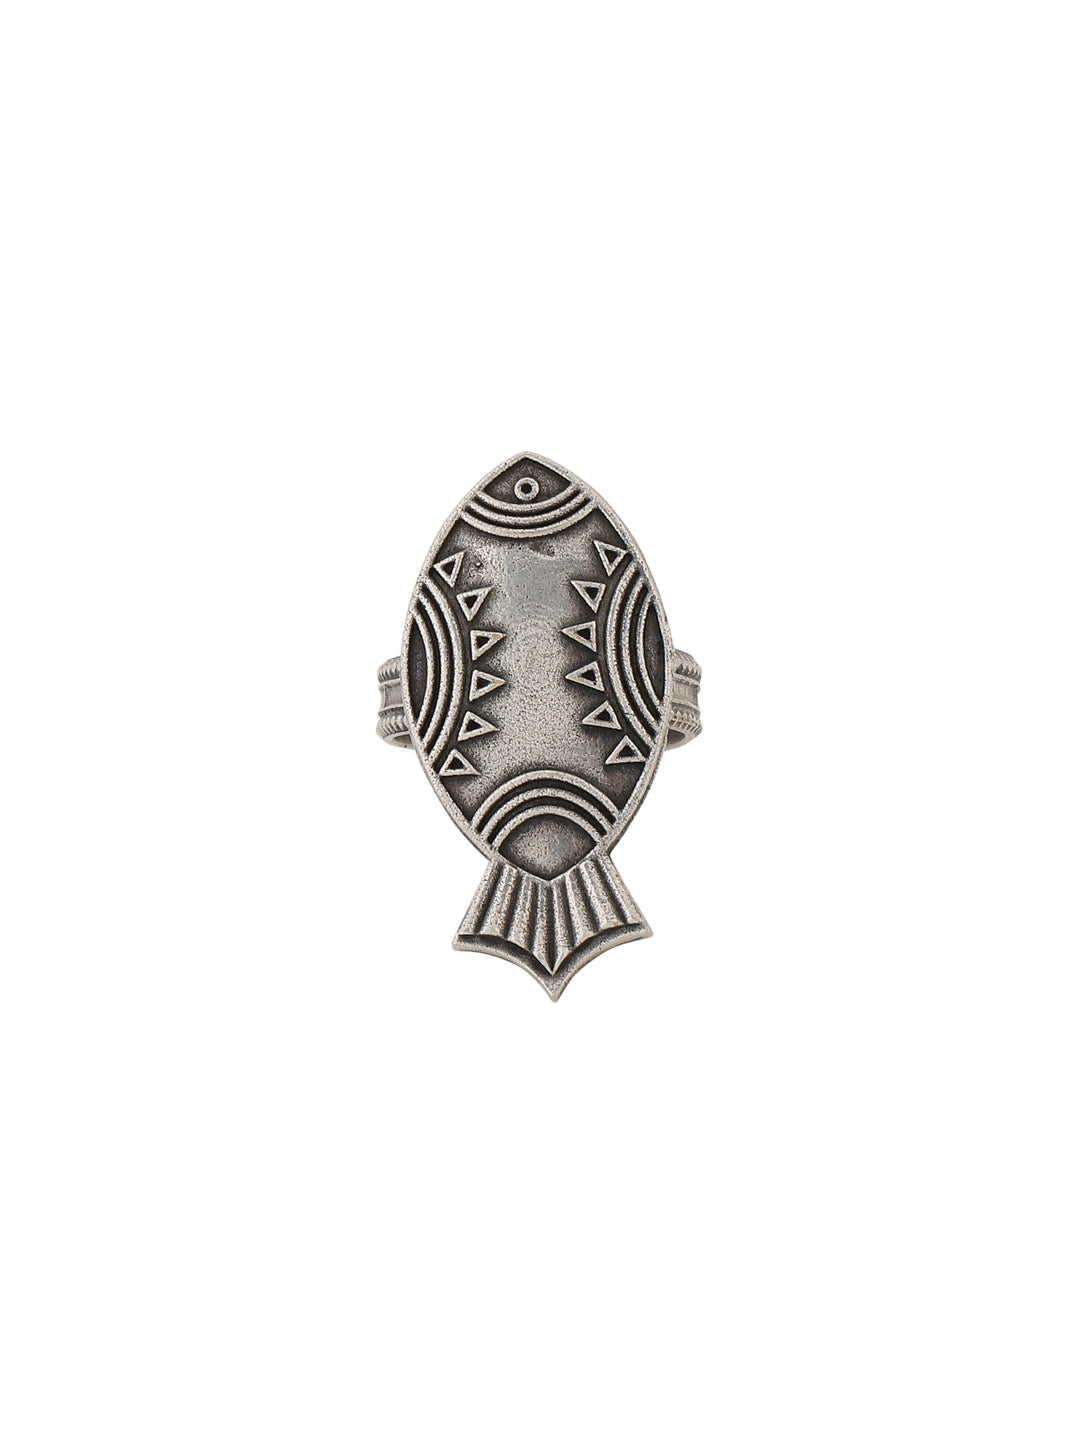 fish-shape-antique-oxidised-ring-adjustable-viraasi